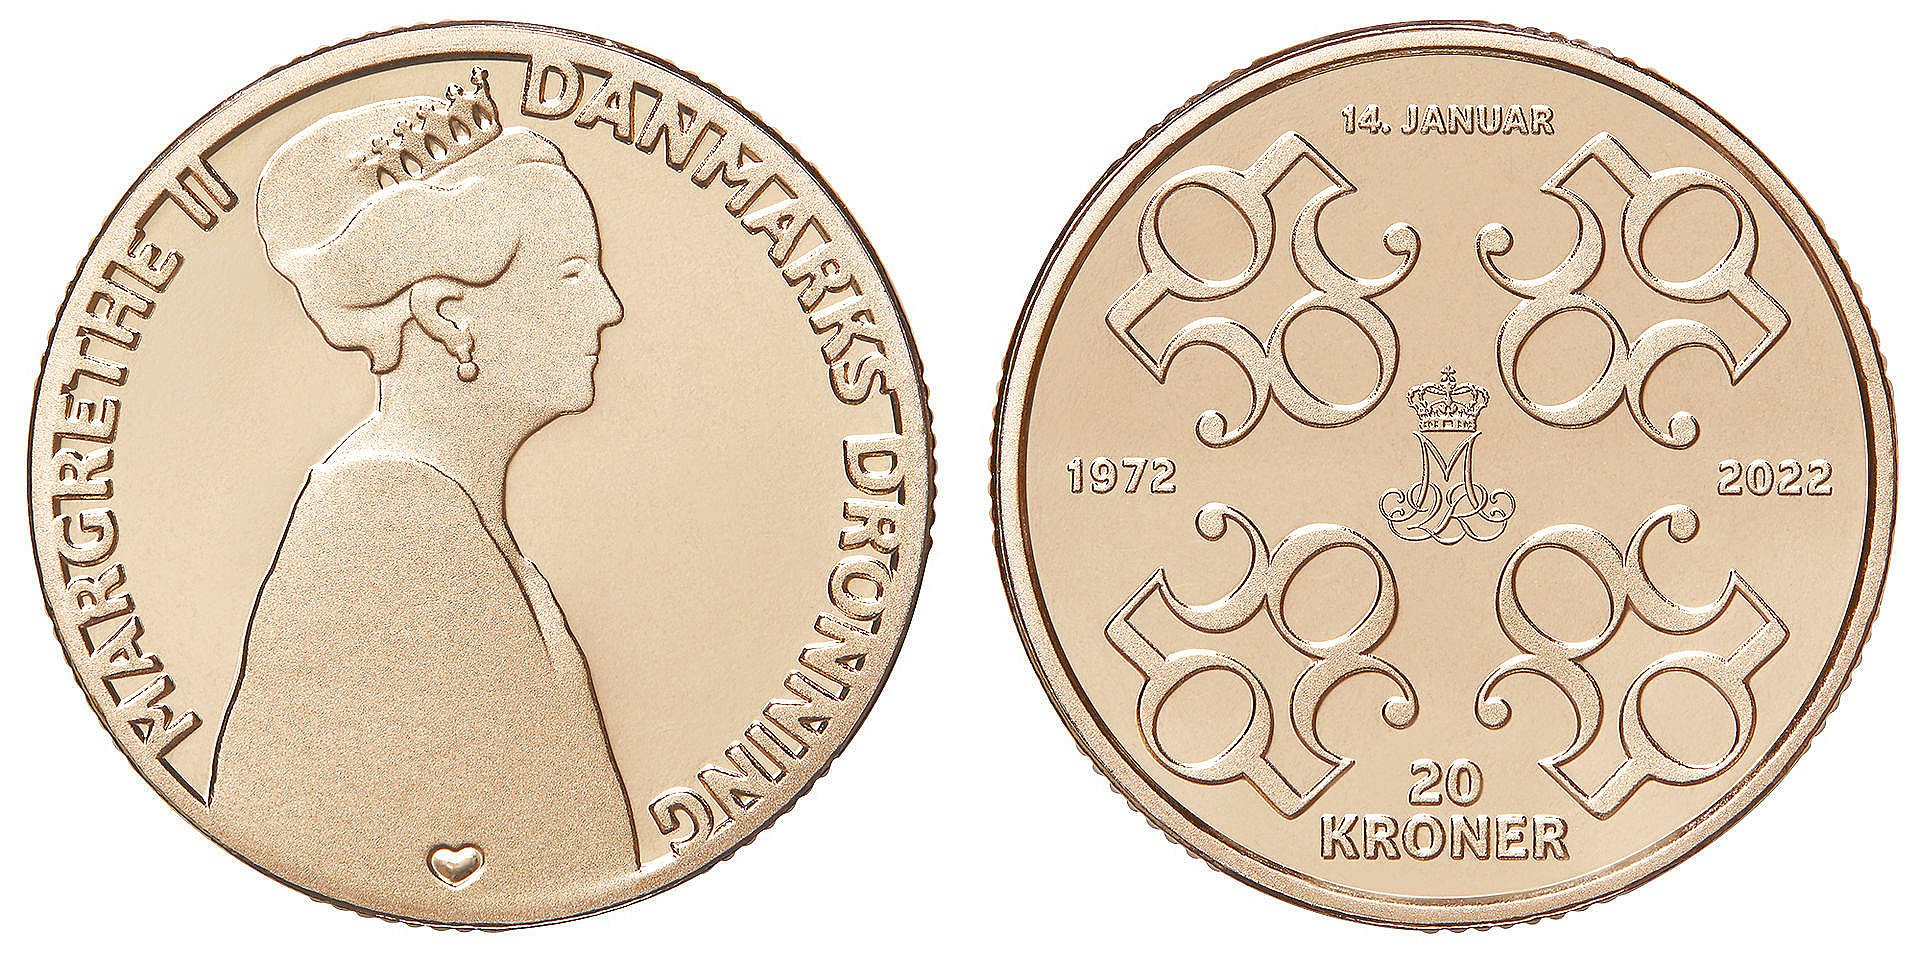 Underholde Agent Rationel Dronningens 50-års regeringsjubilæum markeres med ny mønt | TV2 Østjylland